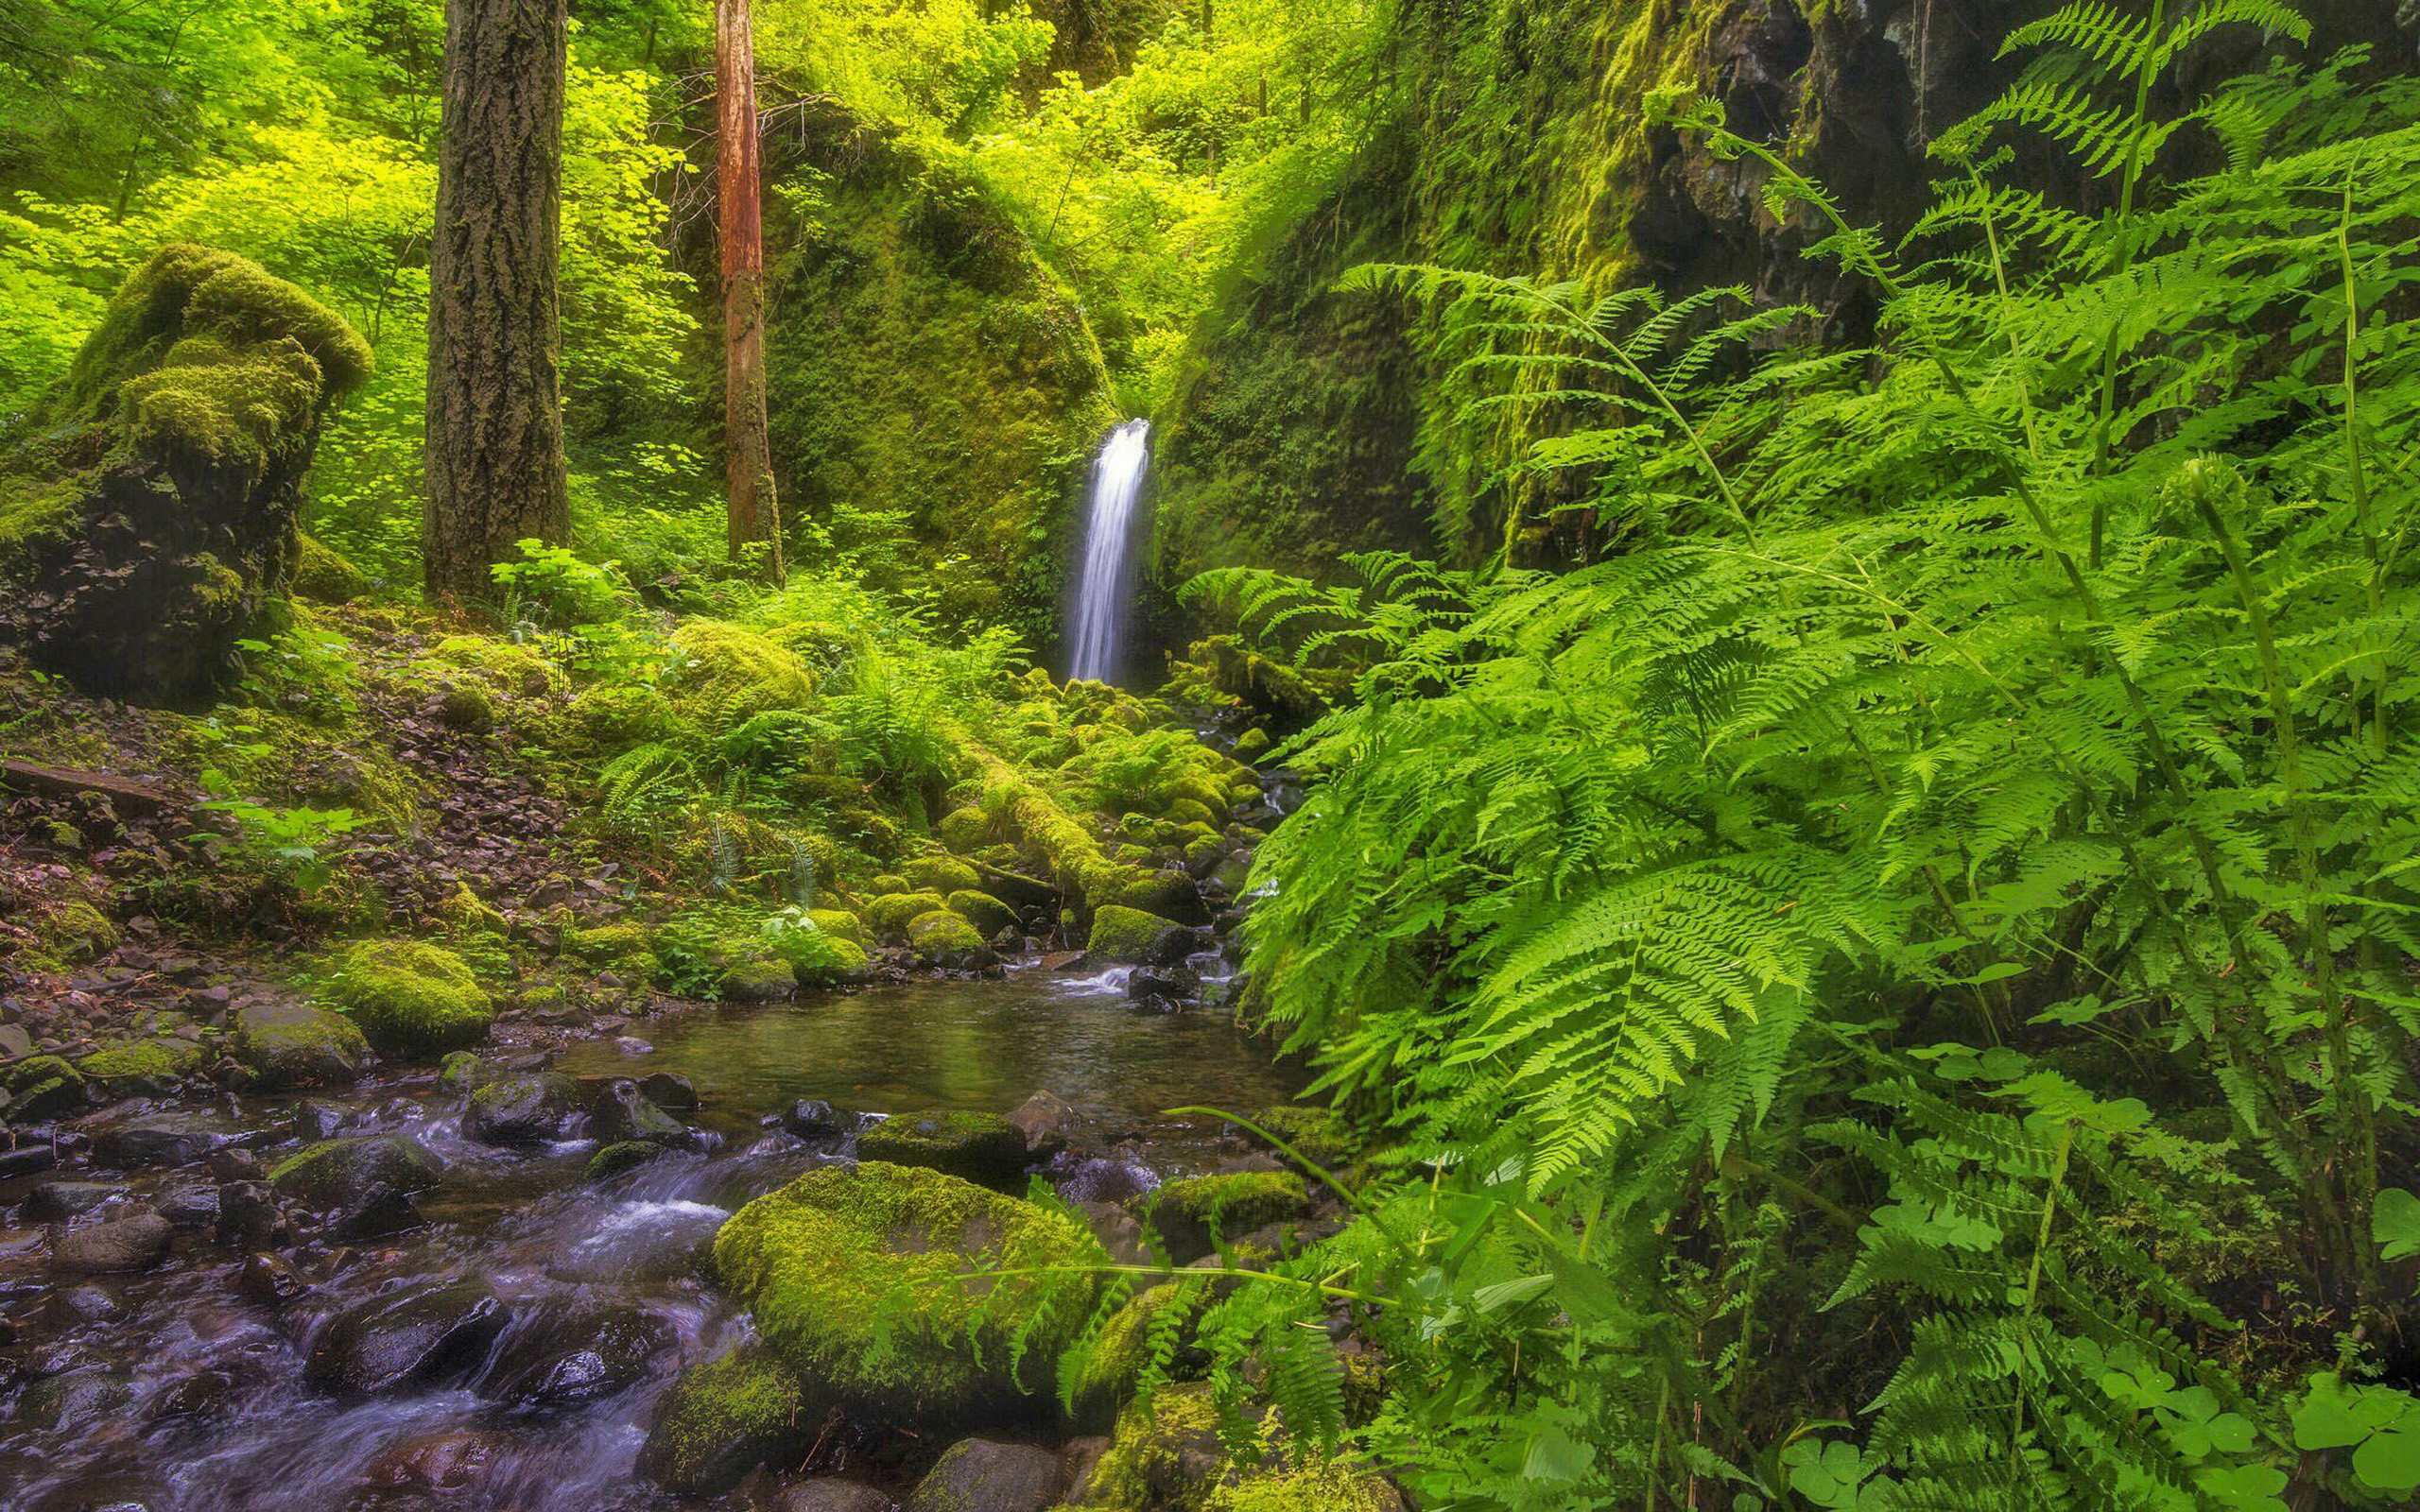 Скачать обои бесплатно Водопады, Водопад, Папоротник, Лес, Зеленый, Земля/природа картинка на рабочий стол ПК